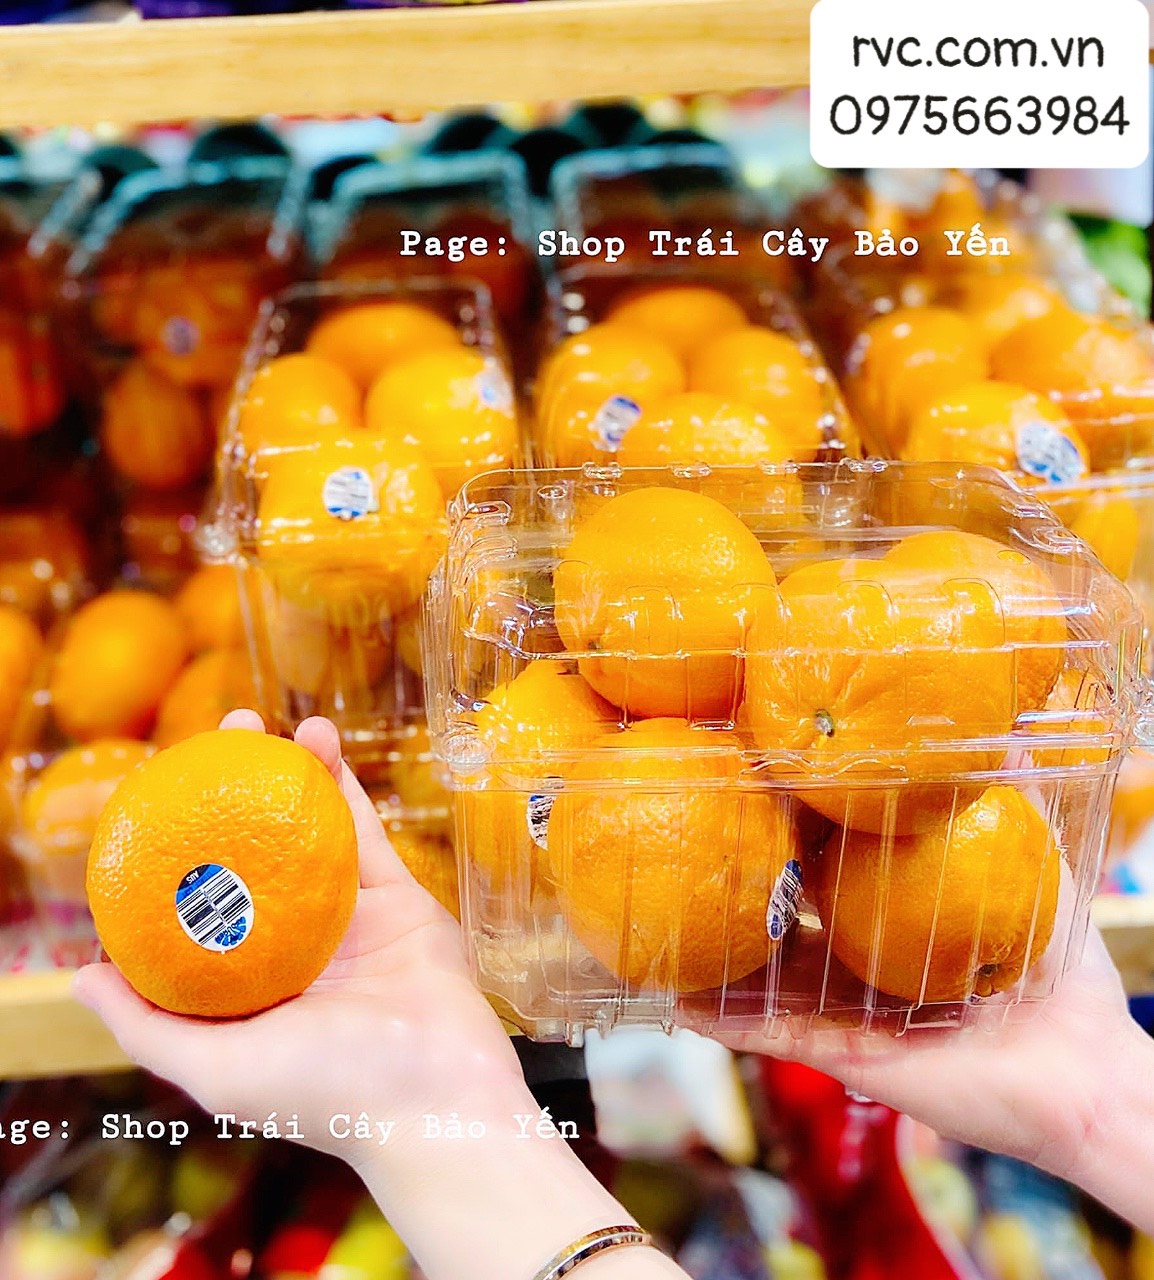 Hộp nhựa P1000B - Giải pháp bảo quản trái cây toàn diện